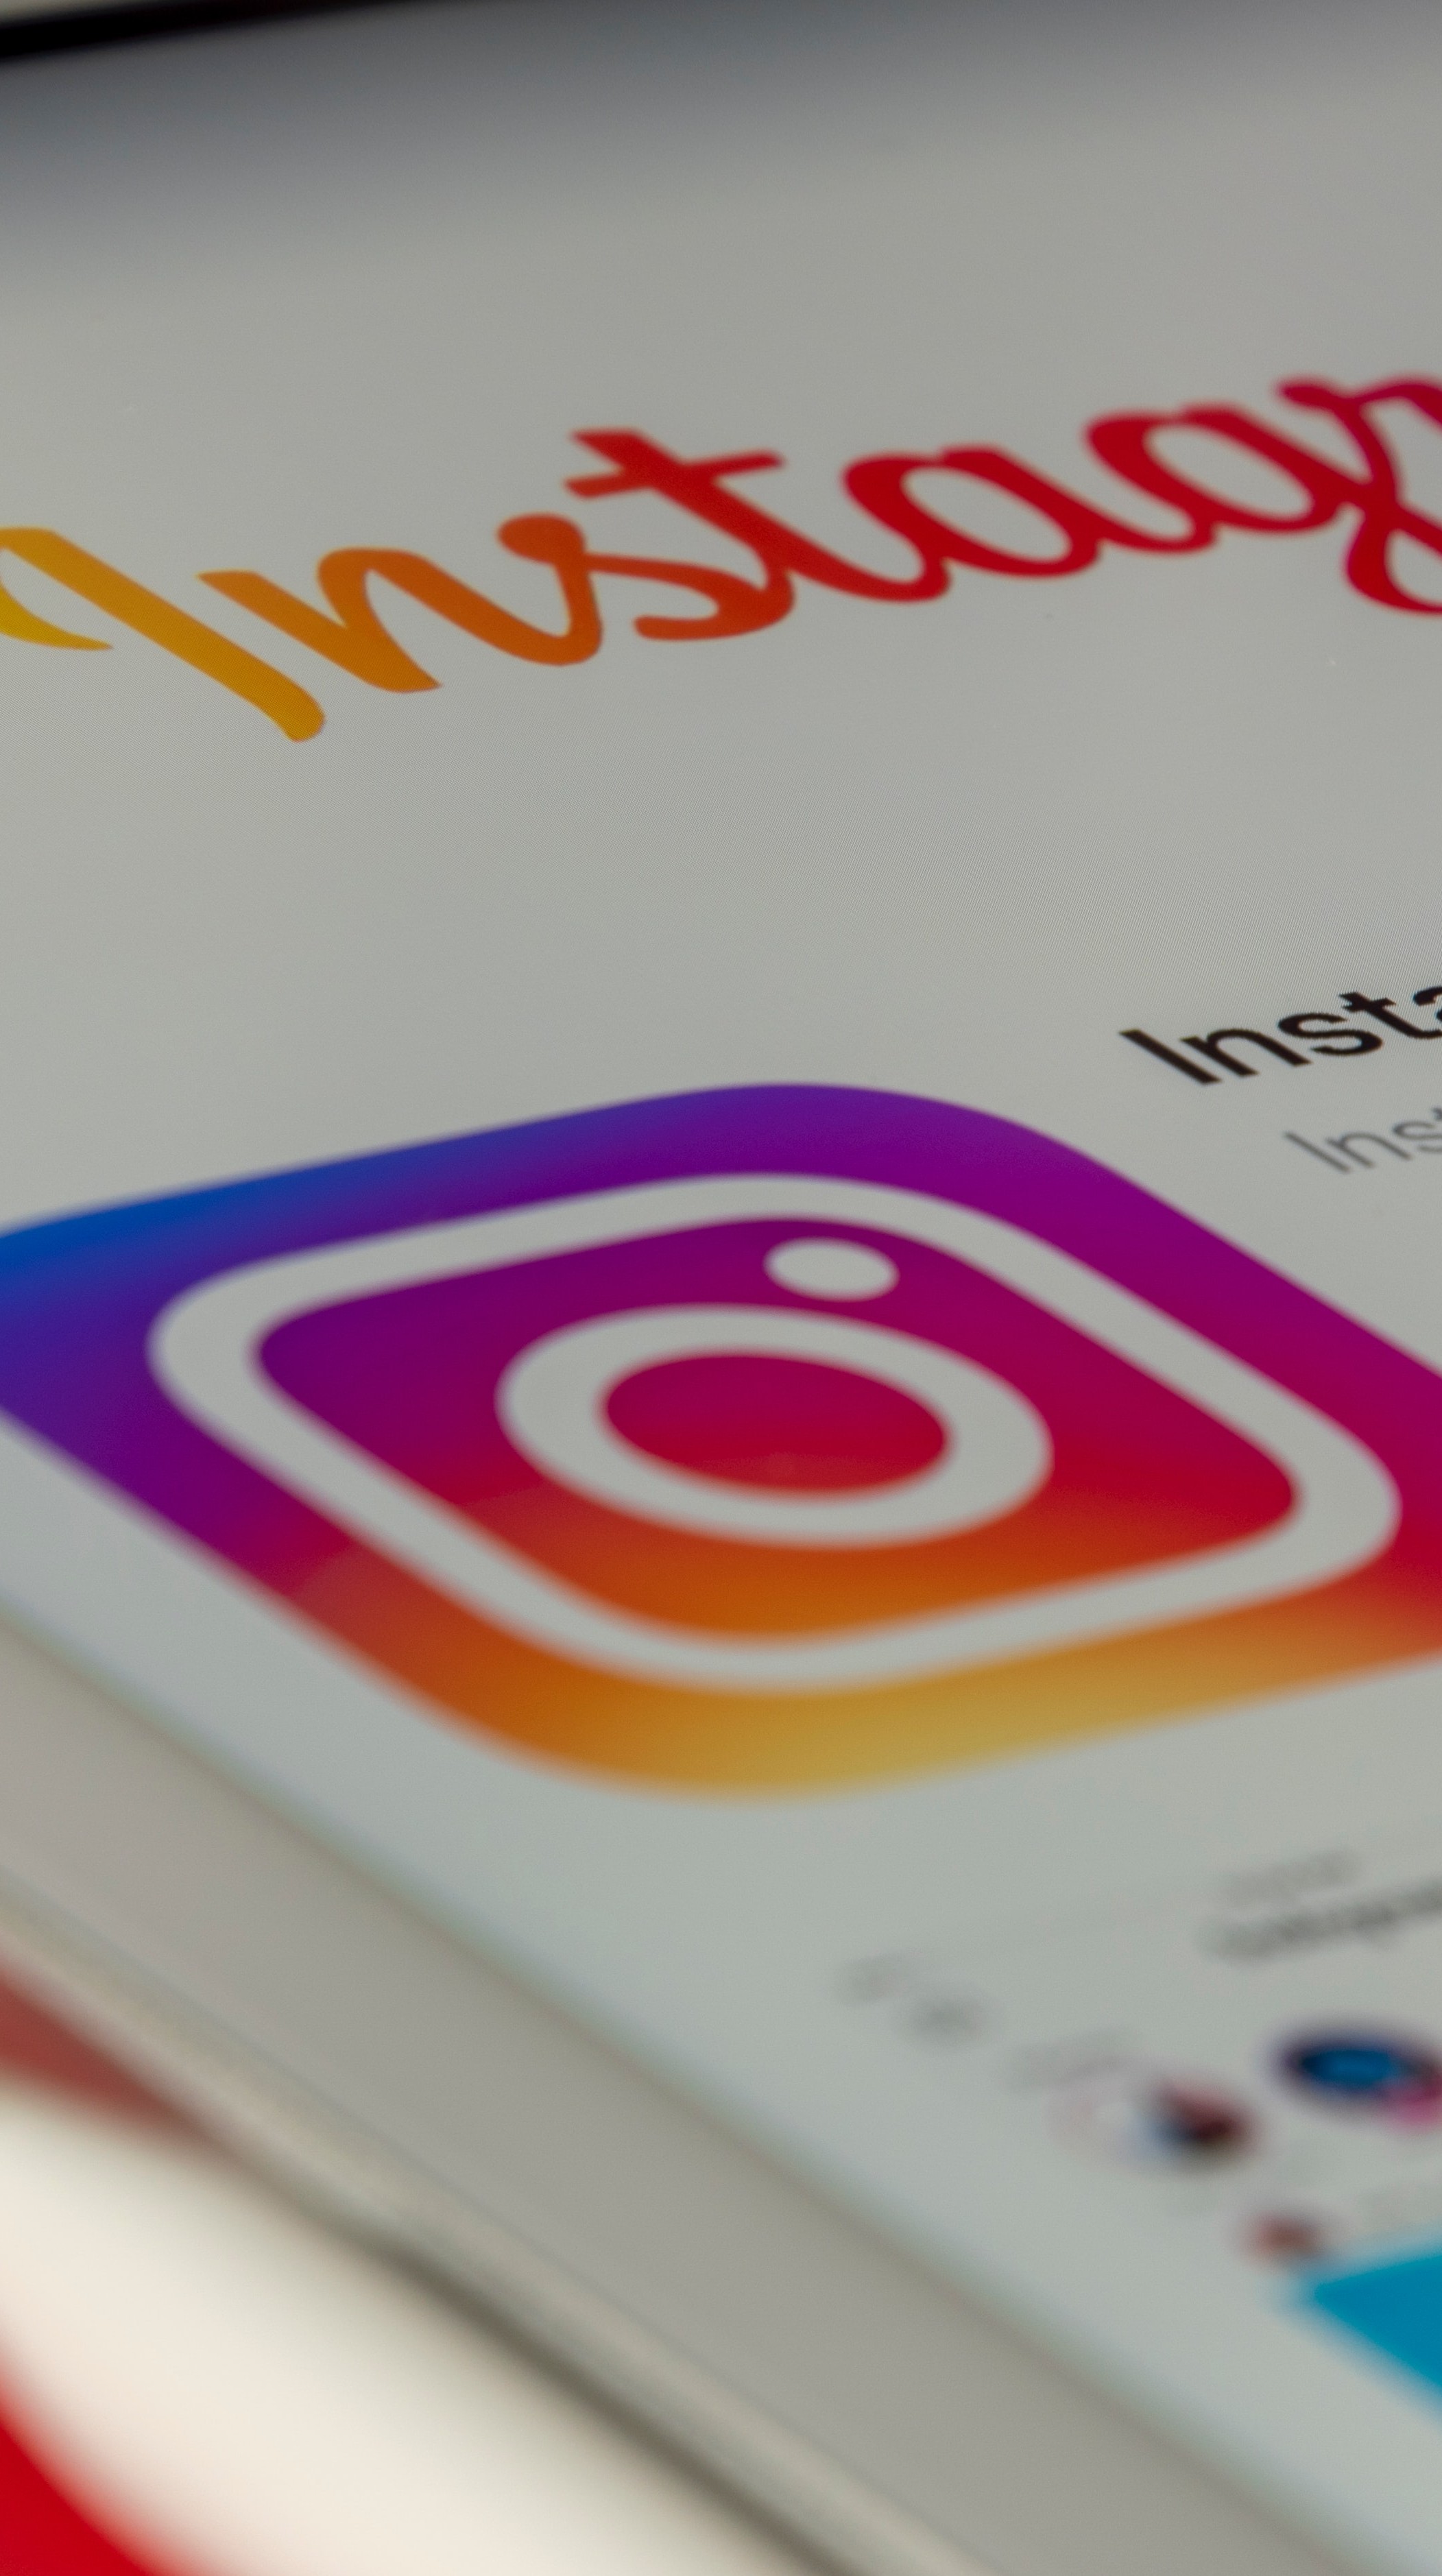 Instagram hackeado 2023: Recupere sua conta